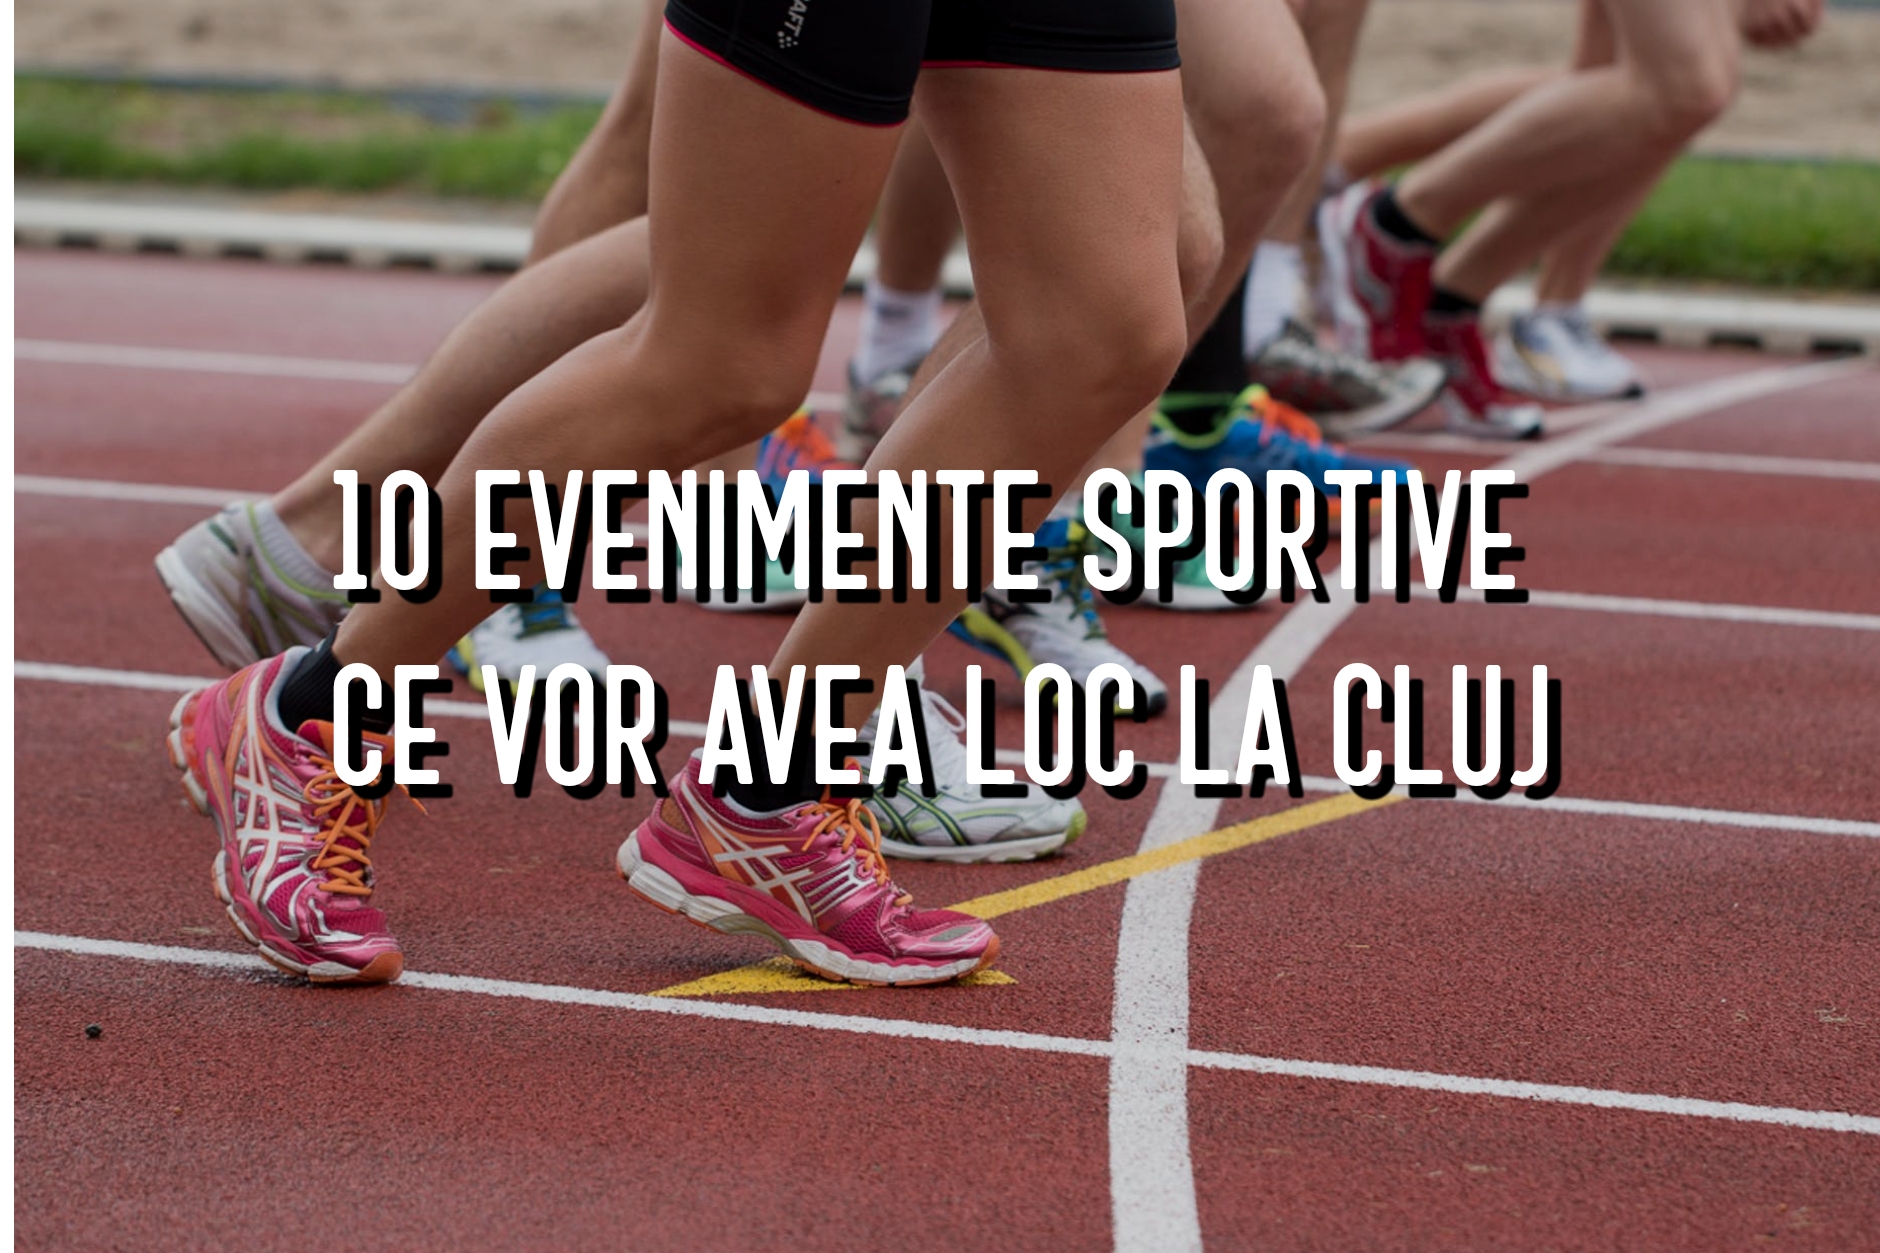 10 evenimente sportive ce vor avea loc în perioada următoare la Cluj